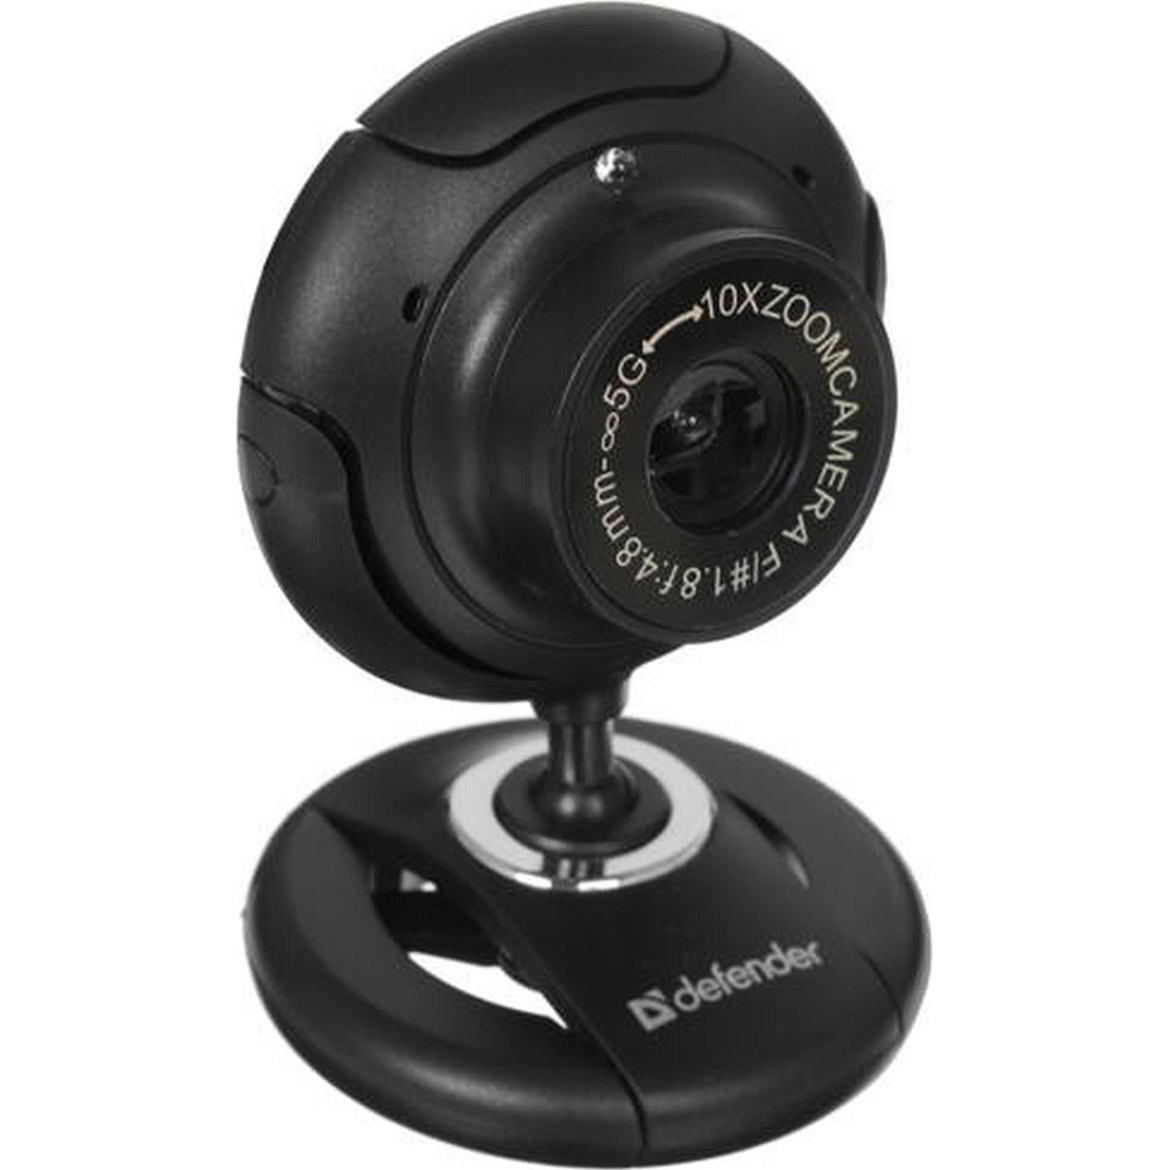 Defender 2525hd. Веб-камера Defender c-2525hd. Web-камера Ritmix RVC-220. Web-камера Defender g-Lens 2579 Black. Камера web Оклик ok-c013fh черный 2mpix (1920x1080) USB2.0 С микрофоном.